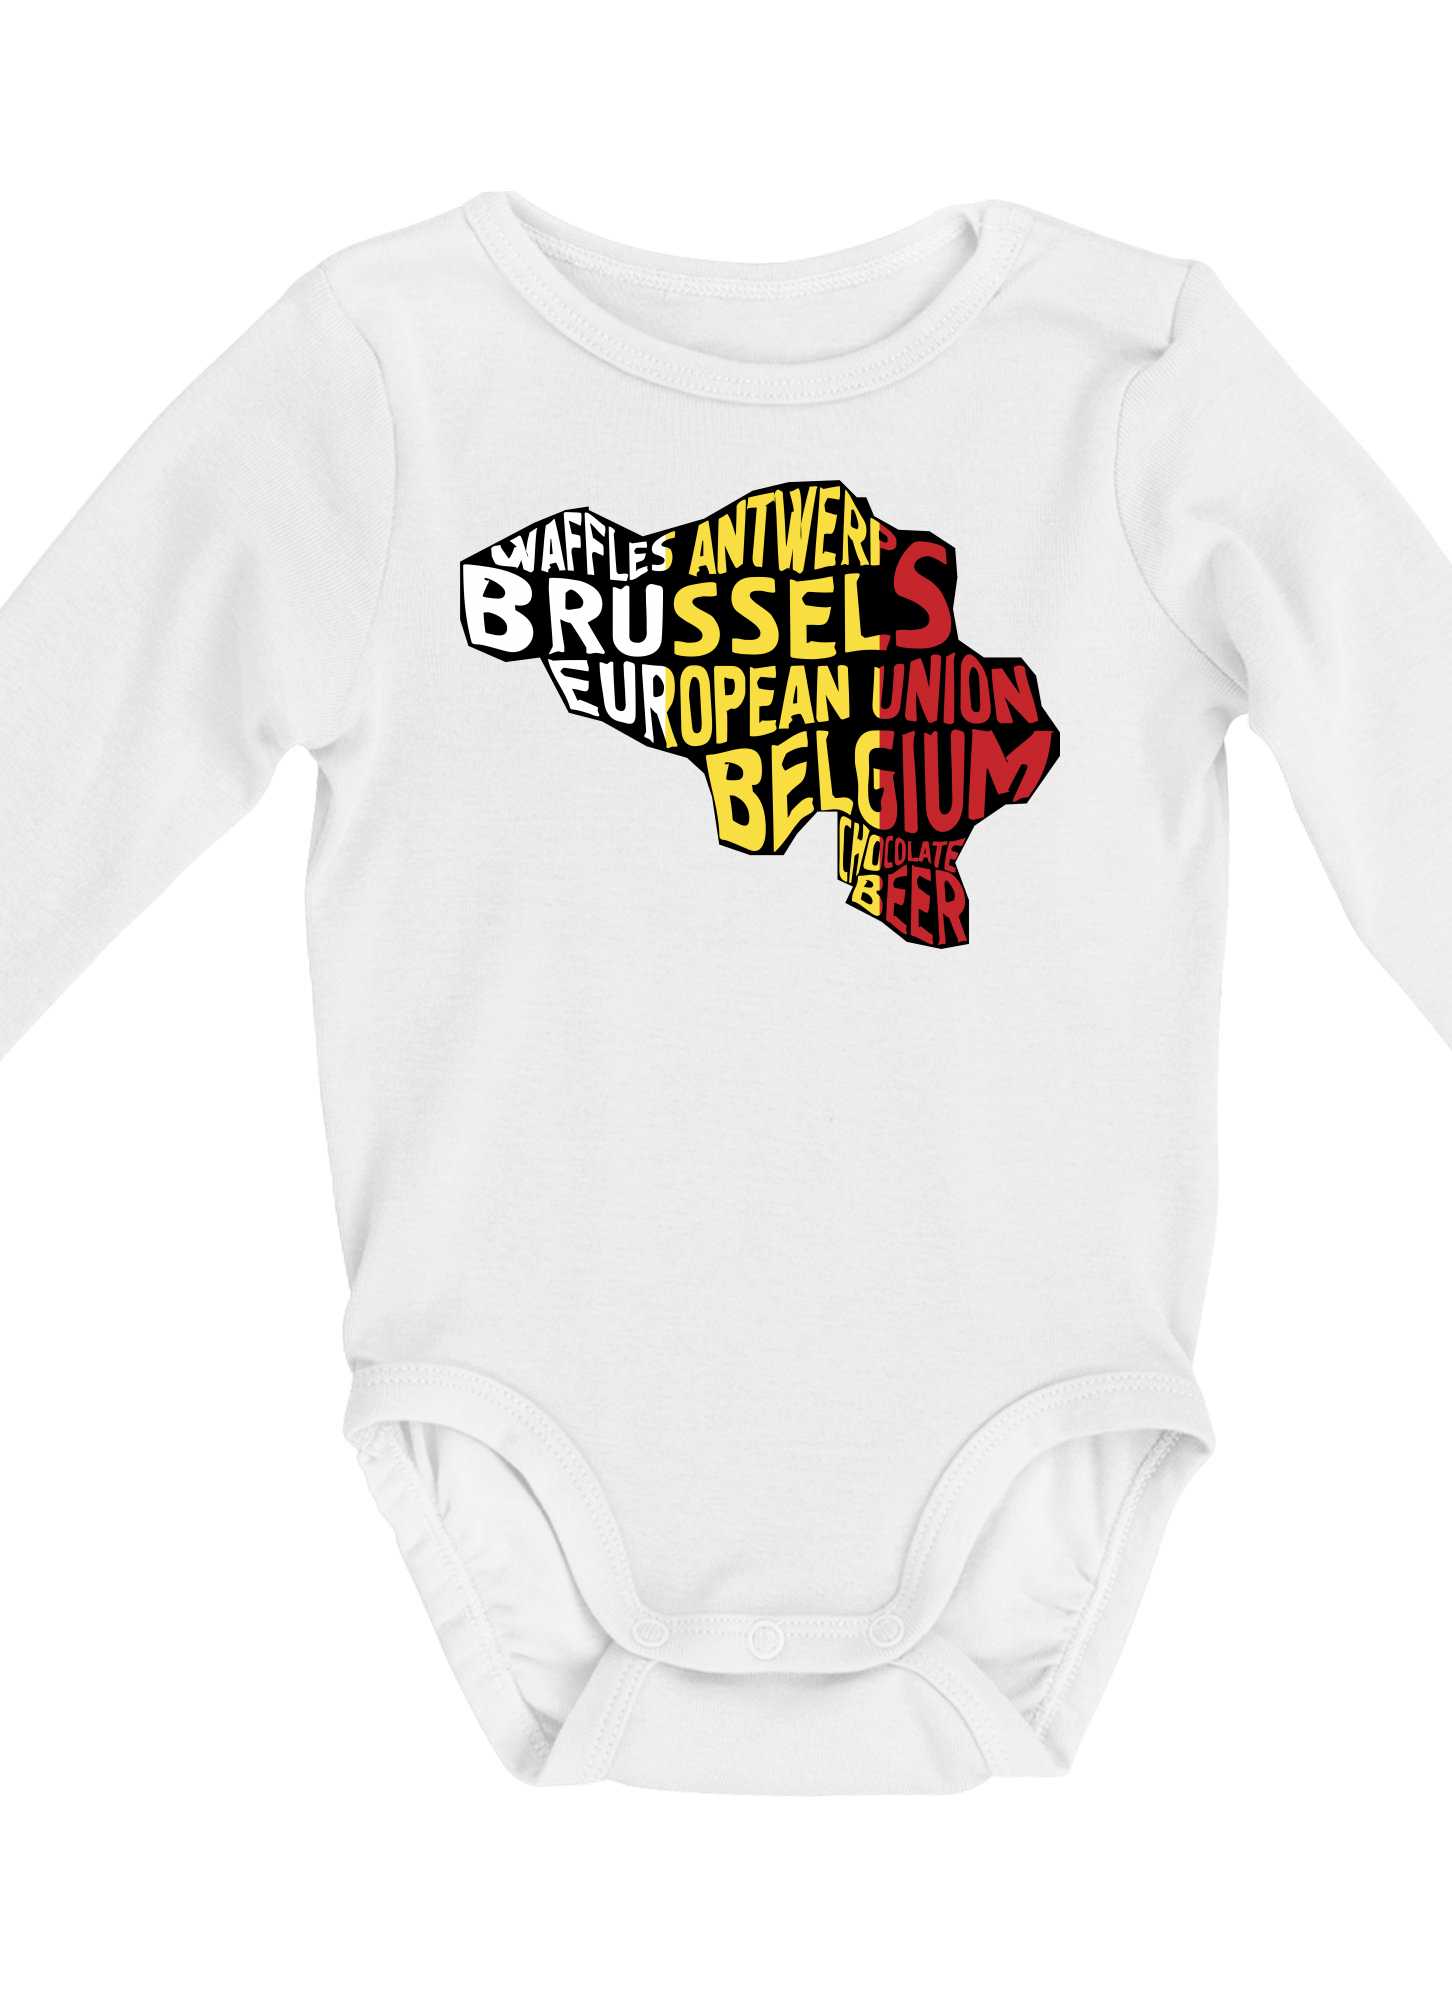 Mapy - názvy měst - Belgie - Body kojenecké s dlouhým rukávem